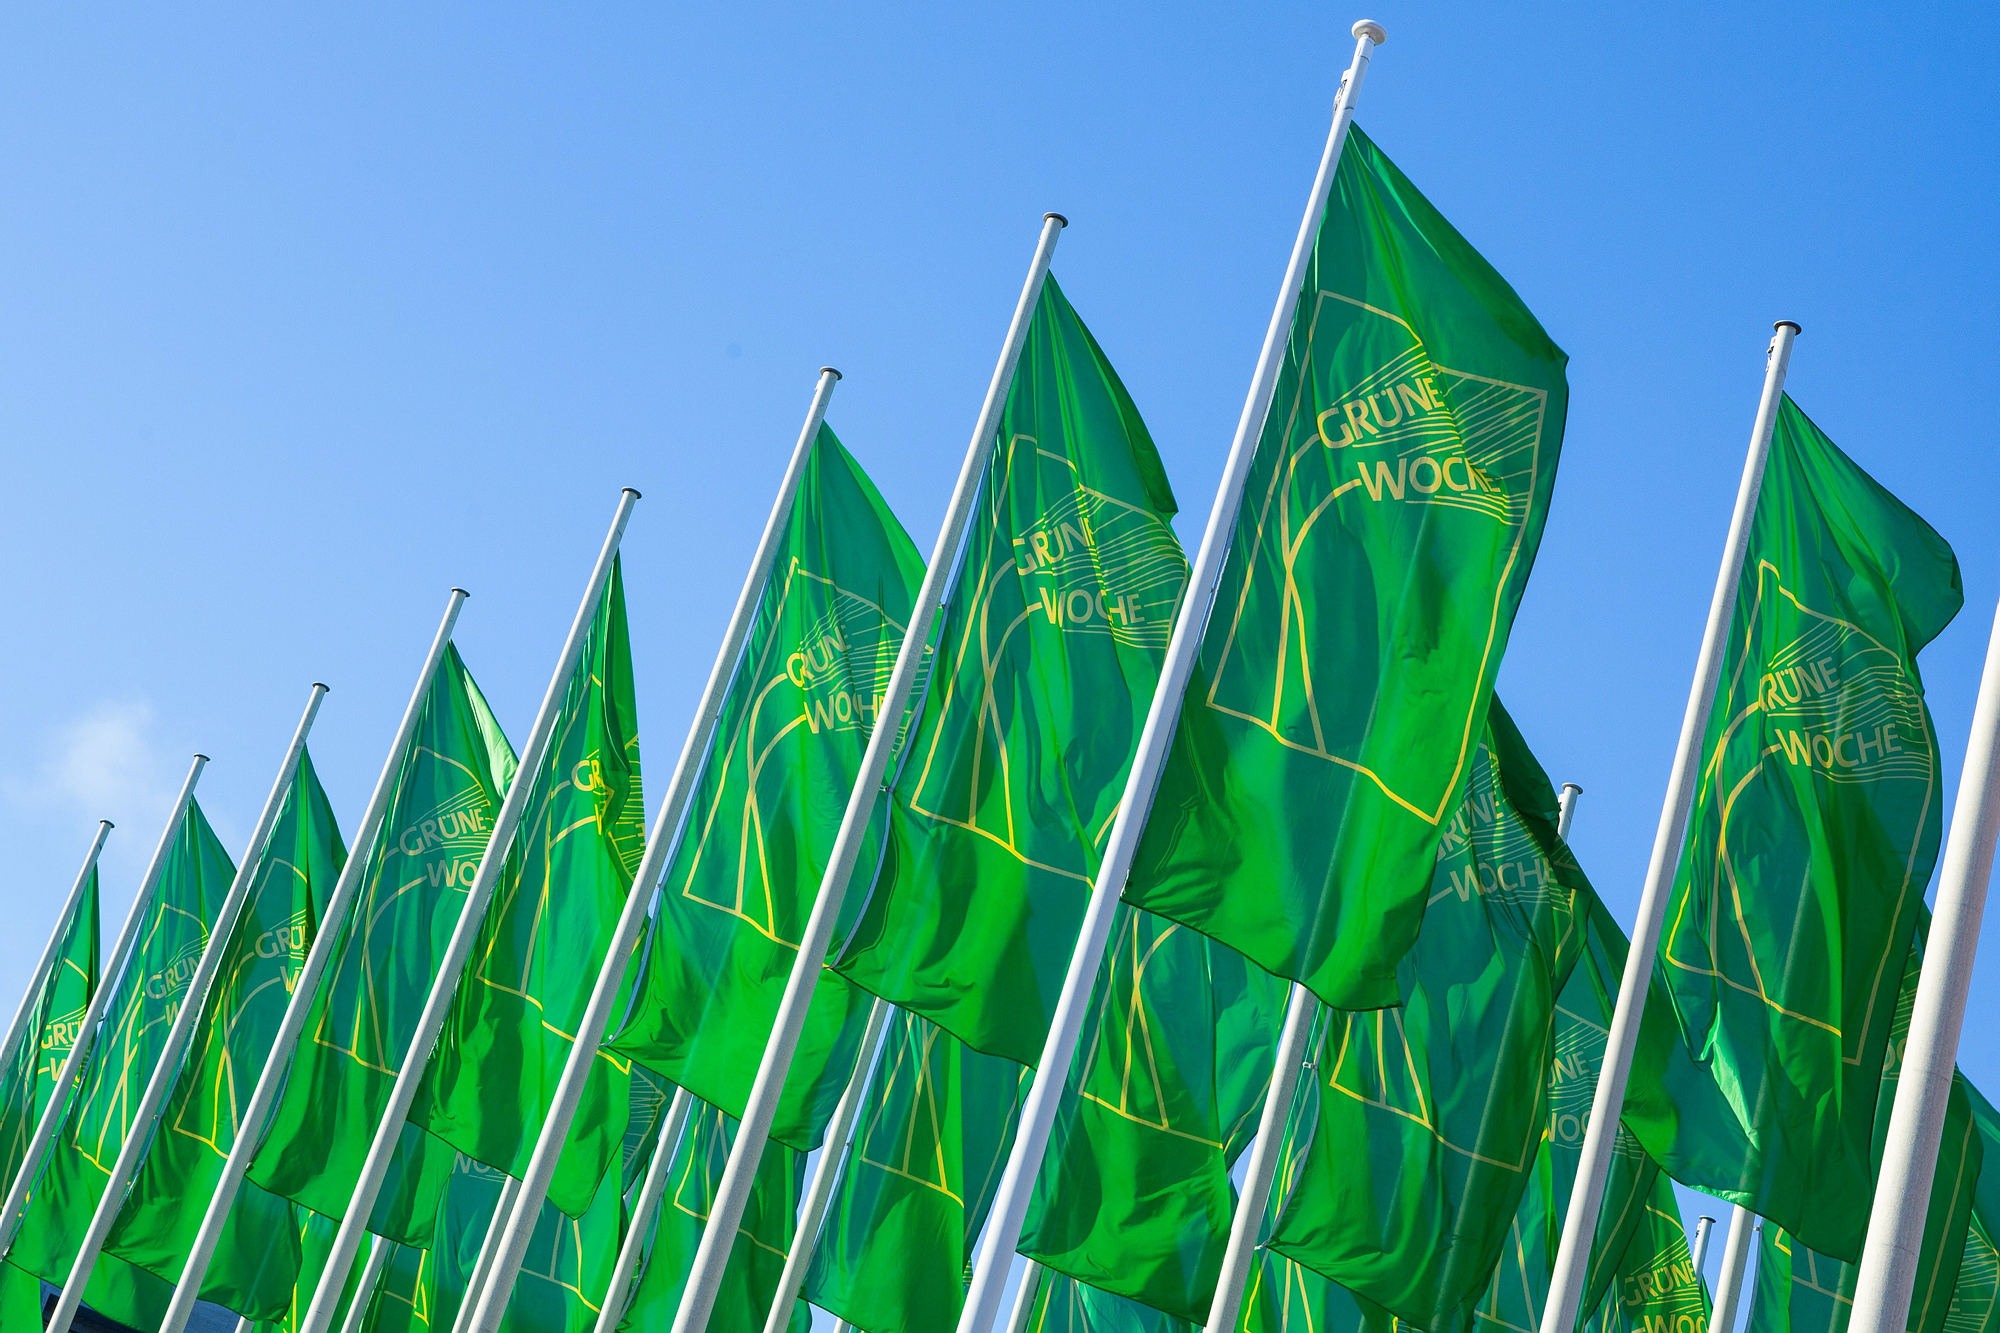 Blick nach oben: Mehrere Grüne Fahnen vor blauem Himmel. Auf den Fahnen ist in gelb das Logo der grünen Woche zu sehen.